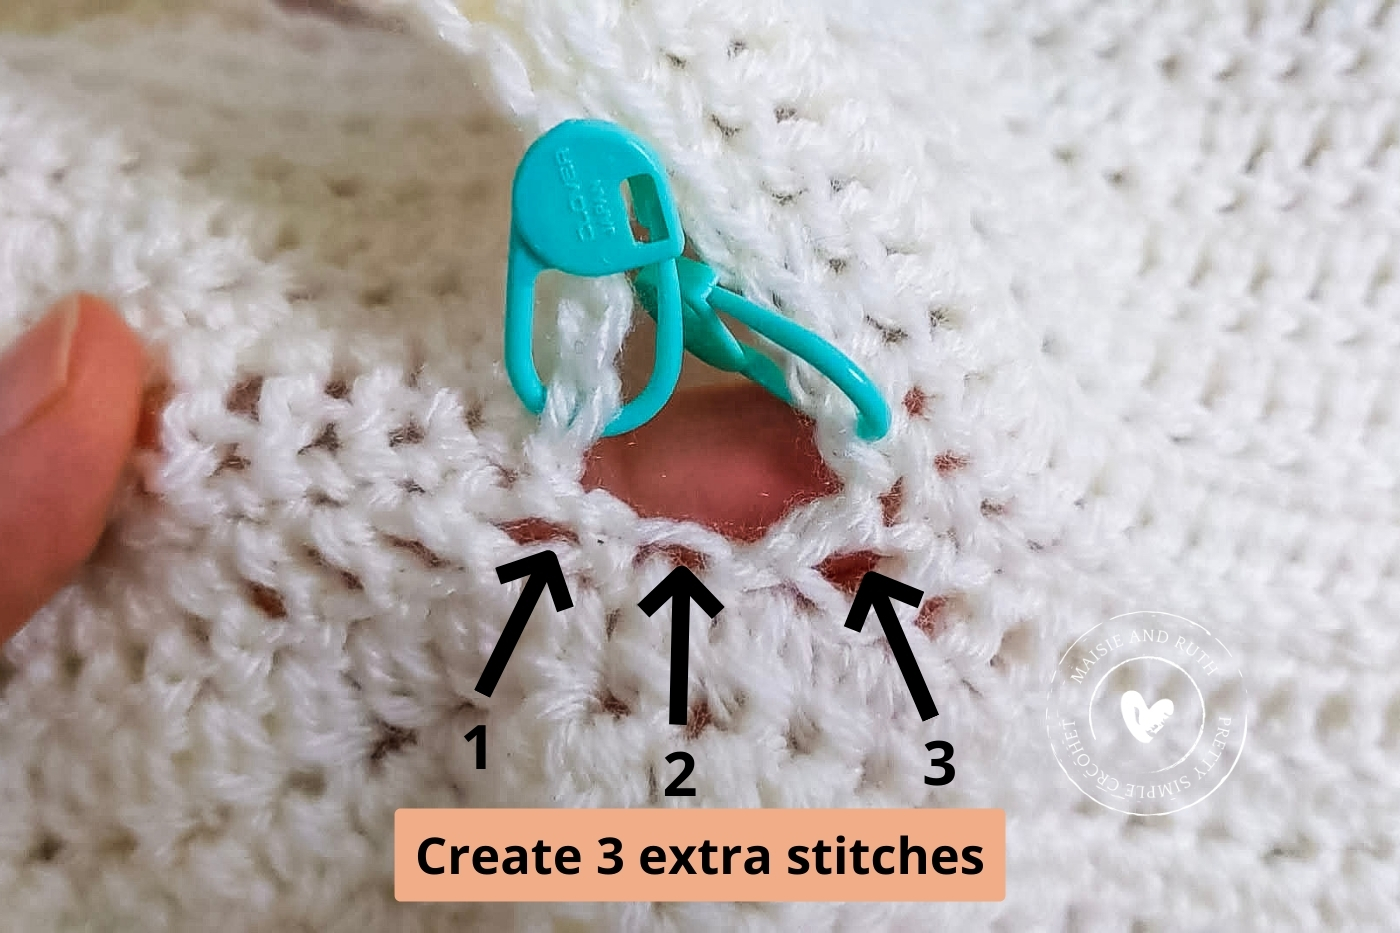 Creating stitches at underarm area